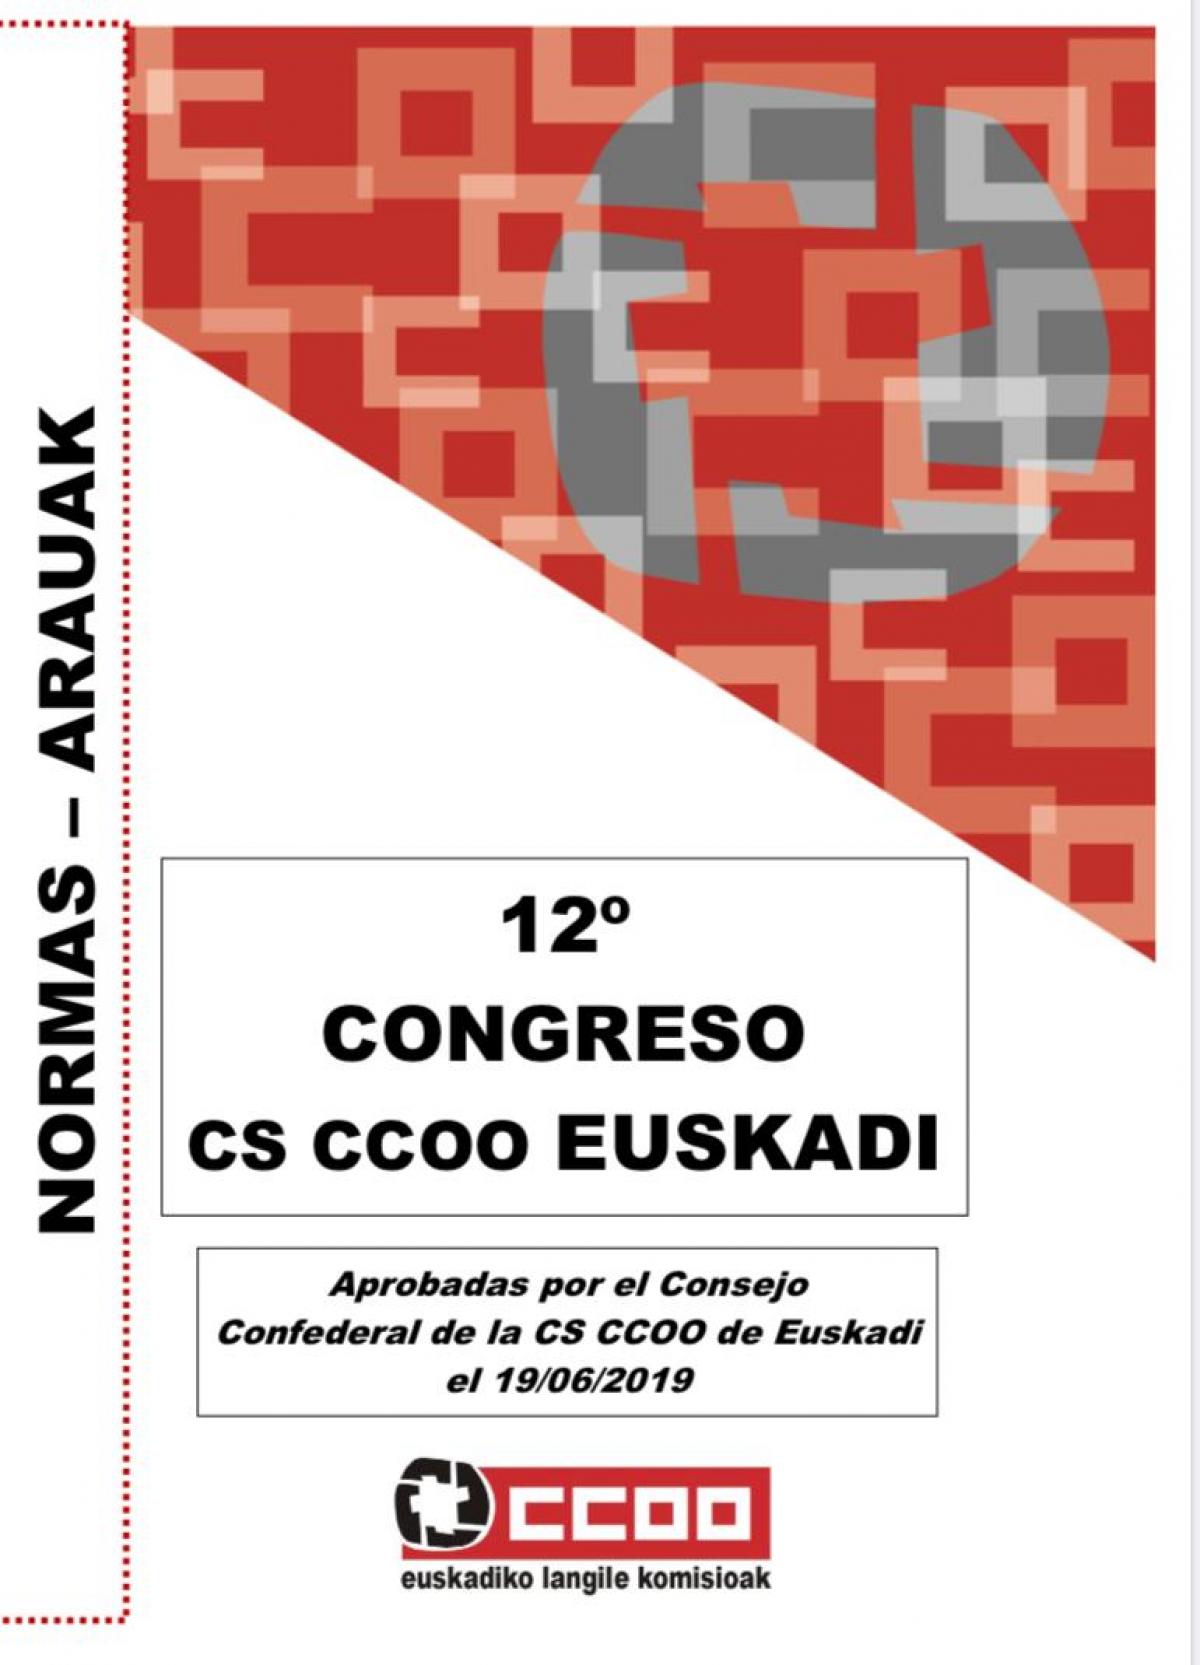 Normas congresuales XII Congreso Confederal de Euskadi